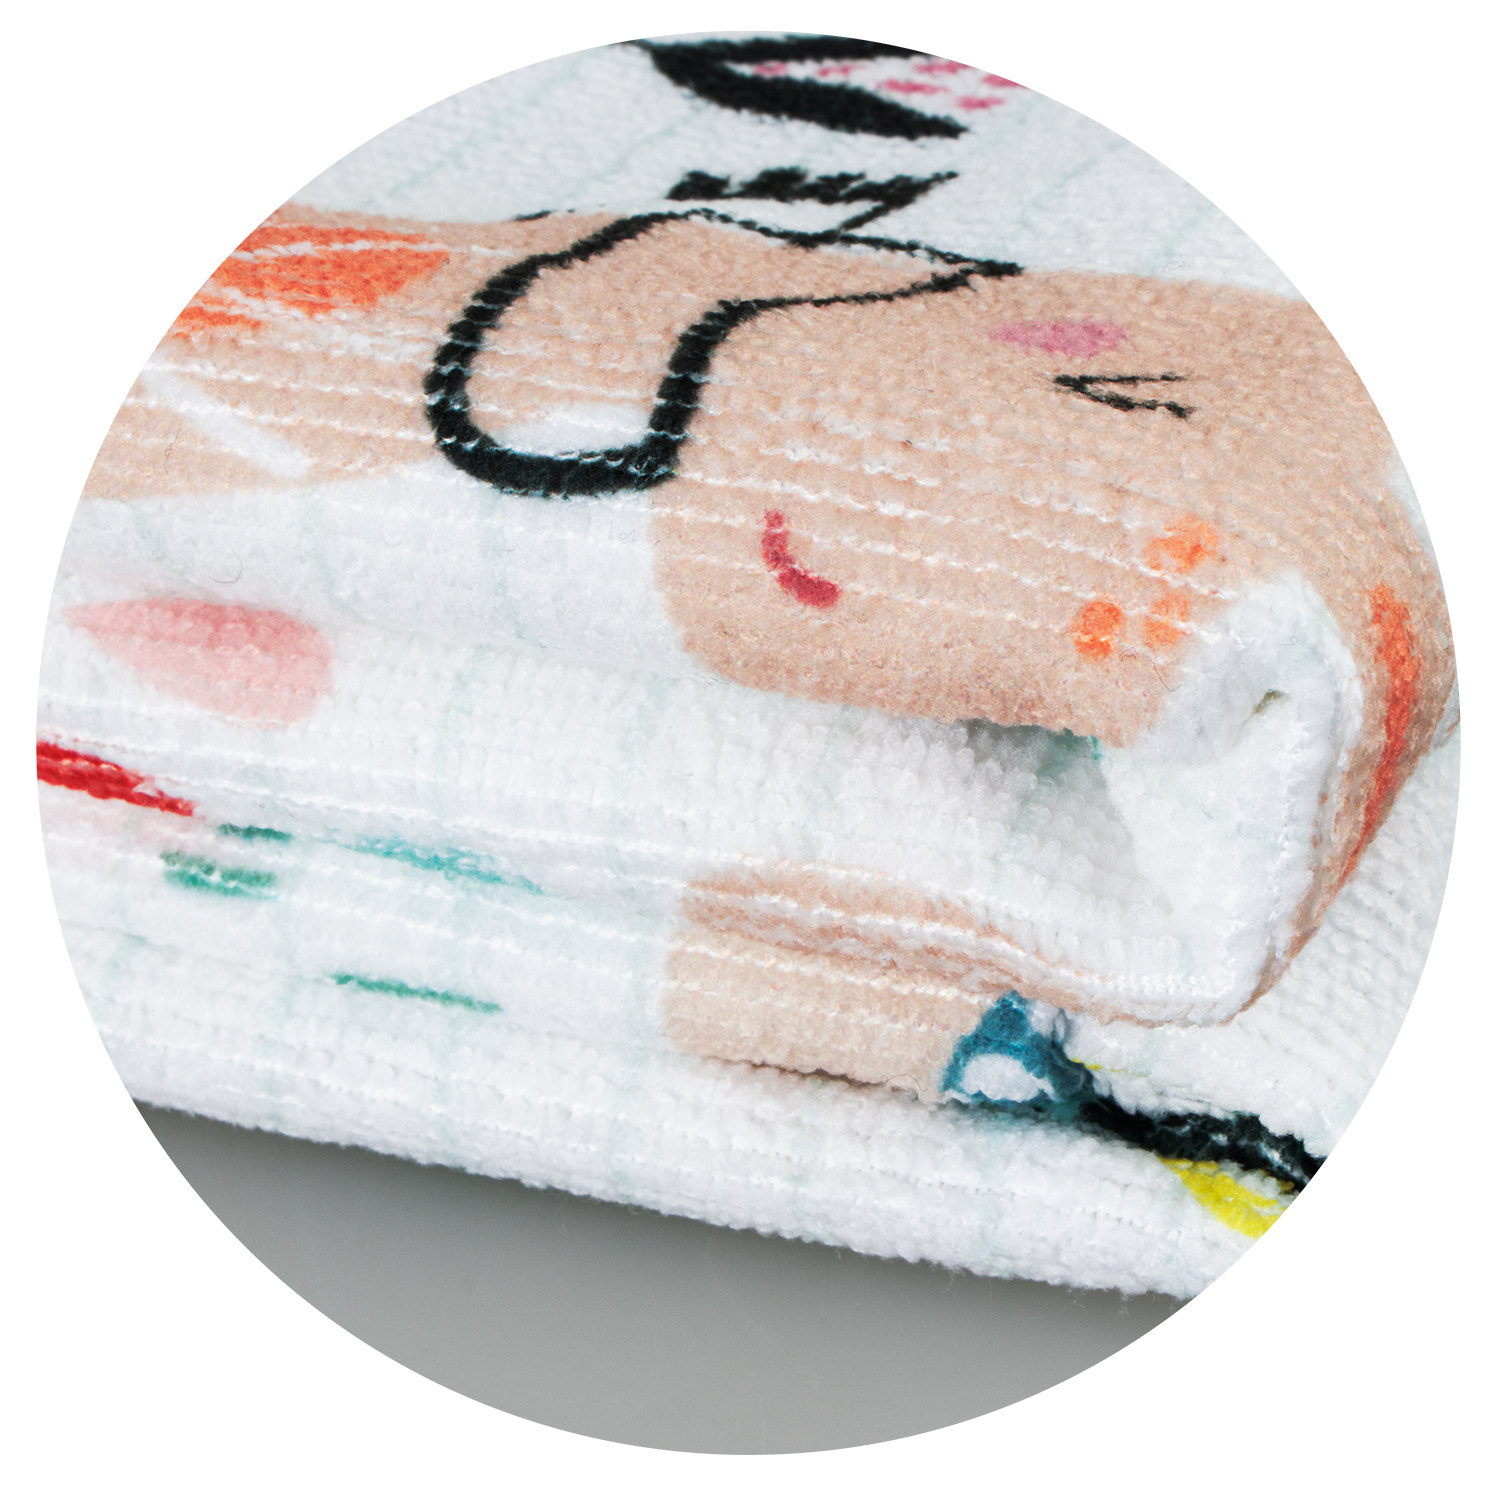 Zen Yoga Towel Features